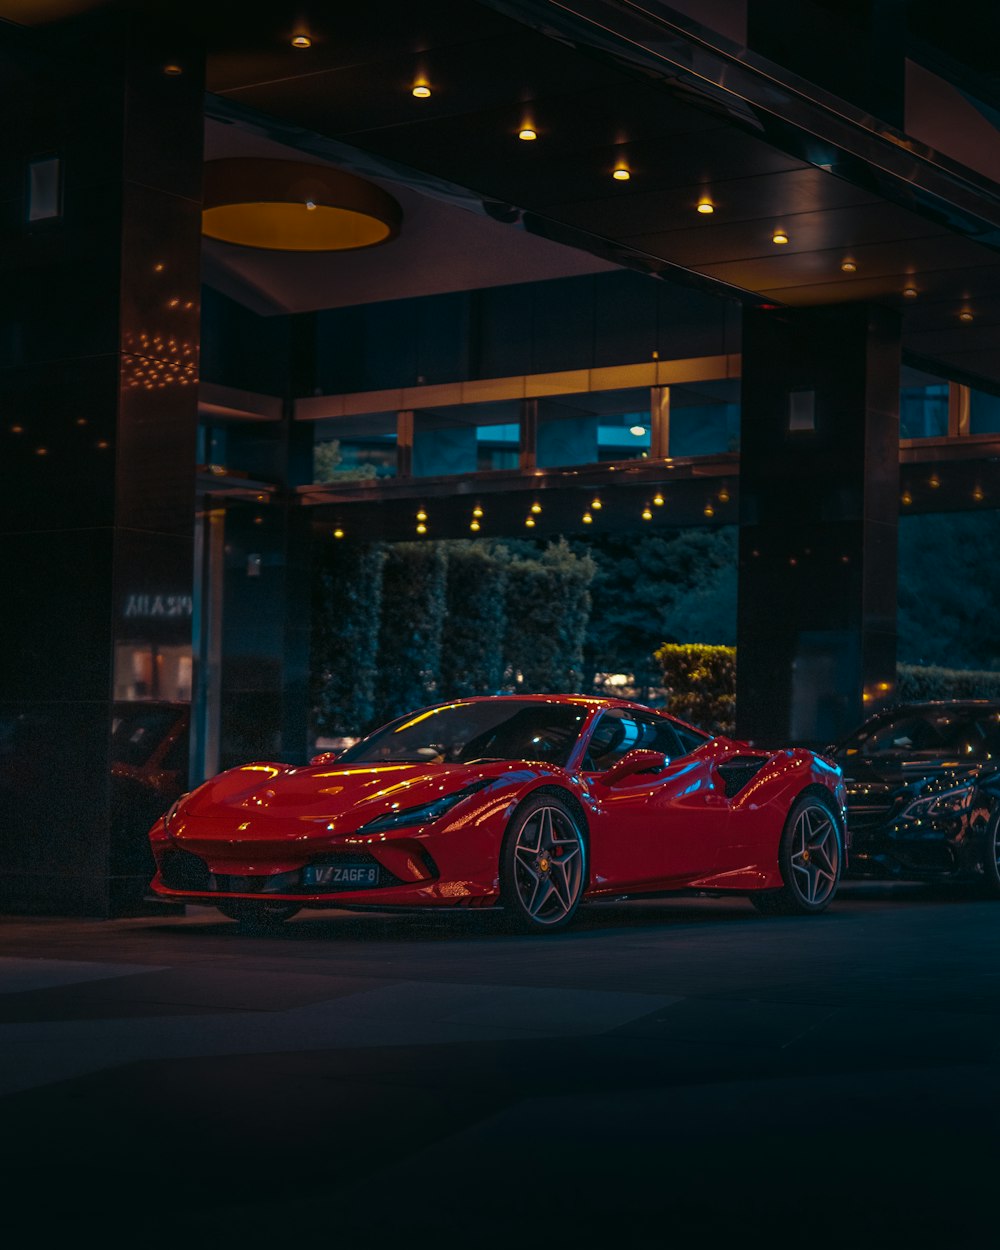 Ferrari hình nền HD miễn phí sẽ khiến trái tim bạn đập chậm lại chỉ để chiêm ngưỡng những chiếc siêu xe tuyệt đẹp này. Tận hưởng một khoảnh khắc thư giãn và đắm chìm trong vẻ đẹp của những chiếc Ferrari đẳng cấp.